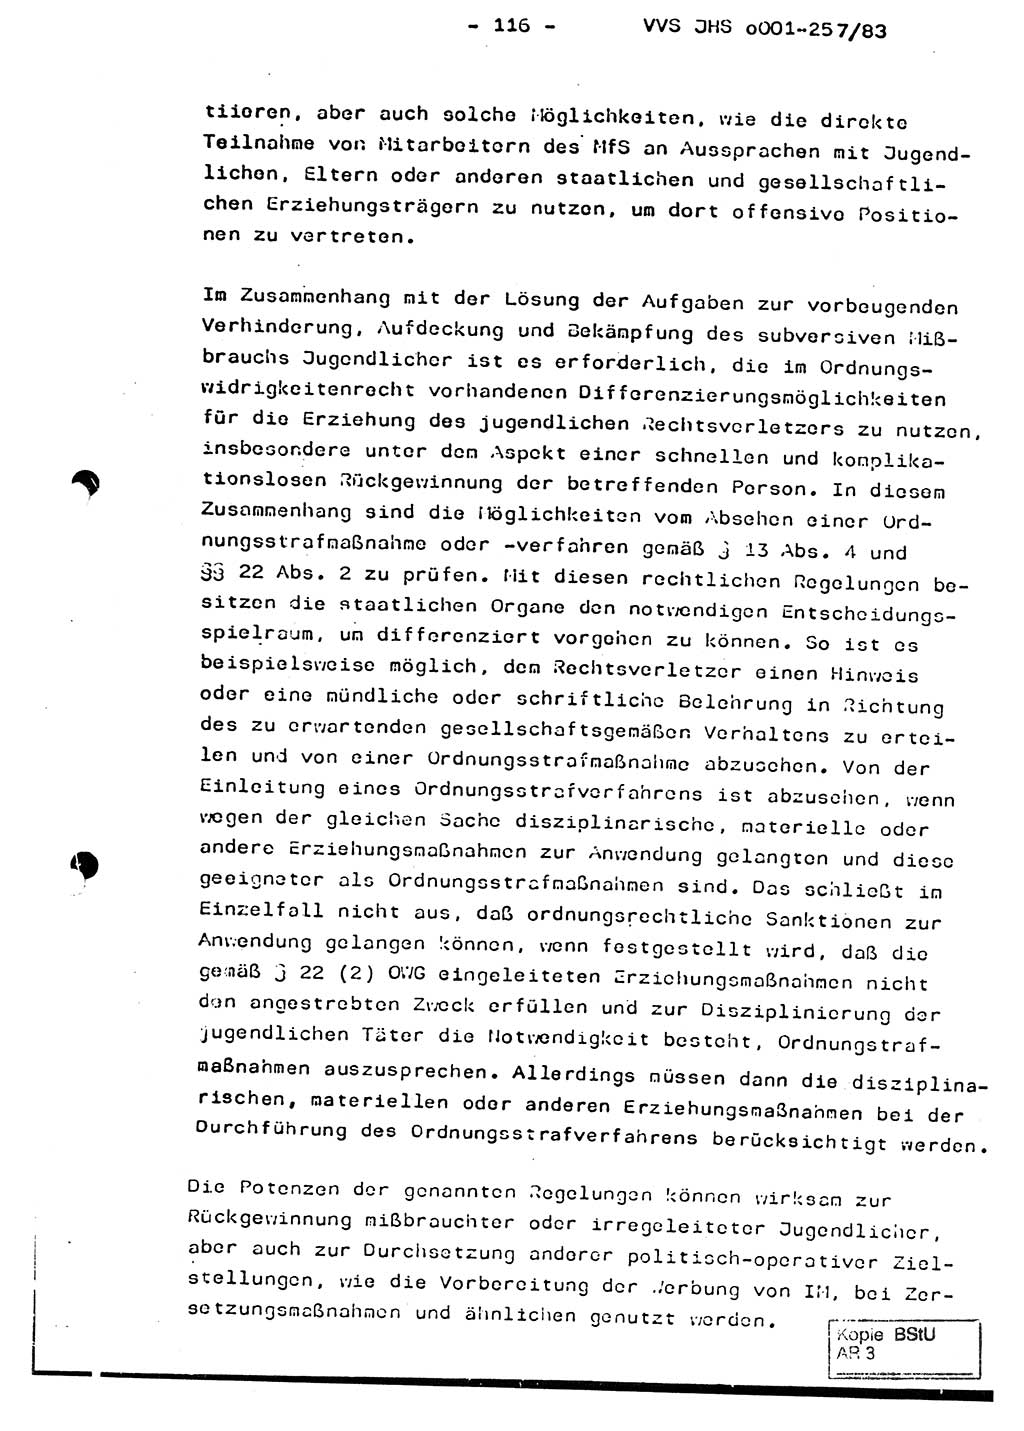 Dissertation, Oberst Helmut Lubas (BV Mdg.), Oberstleutnant Manfred Eschberger (HA IX), Oberleutnant Hans-Jürgen Ludwig (JHS), Ministerium für Staatssicherheit (MfS) [Deutsche Demokratische Republik (DDR)], Juristische Hochschule (JHS), Vertrauliche Verschlußsache (VVS) o001-257/83, Potsdam 1983, Seite 116 (Diss. MfS DDR JHS VVS o001-257/83 1983, S. 116)